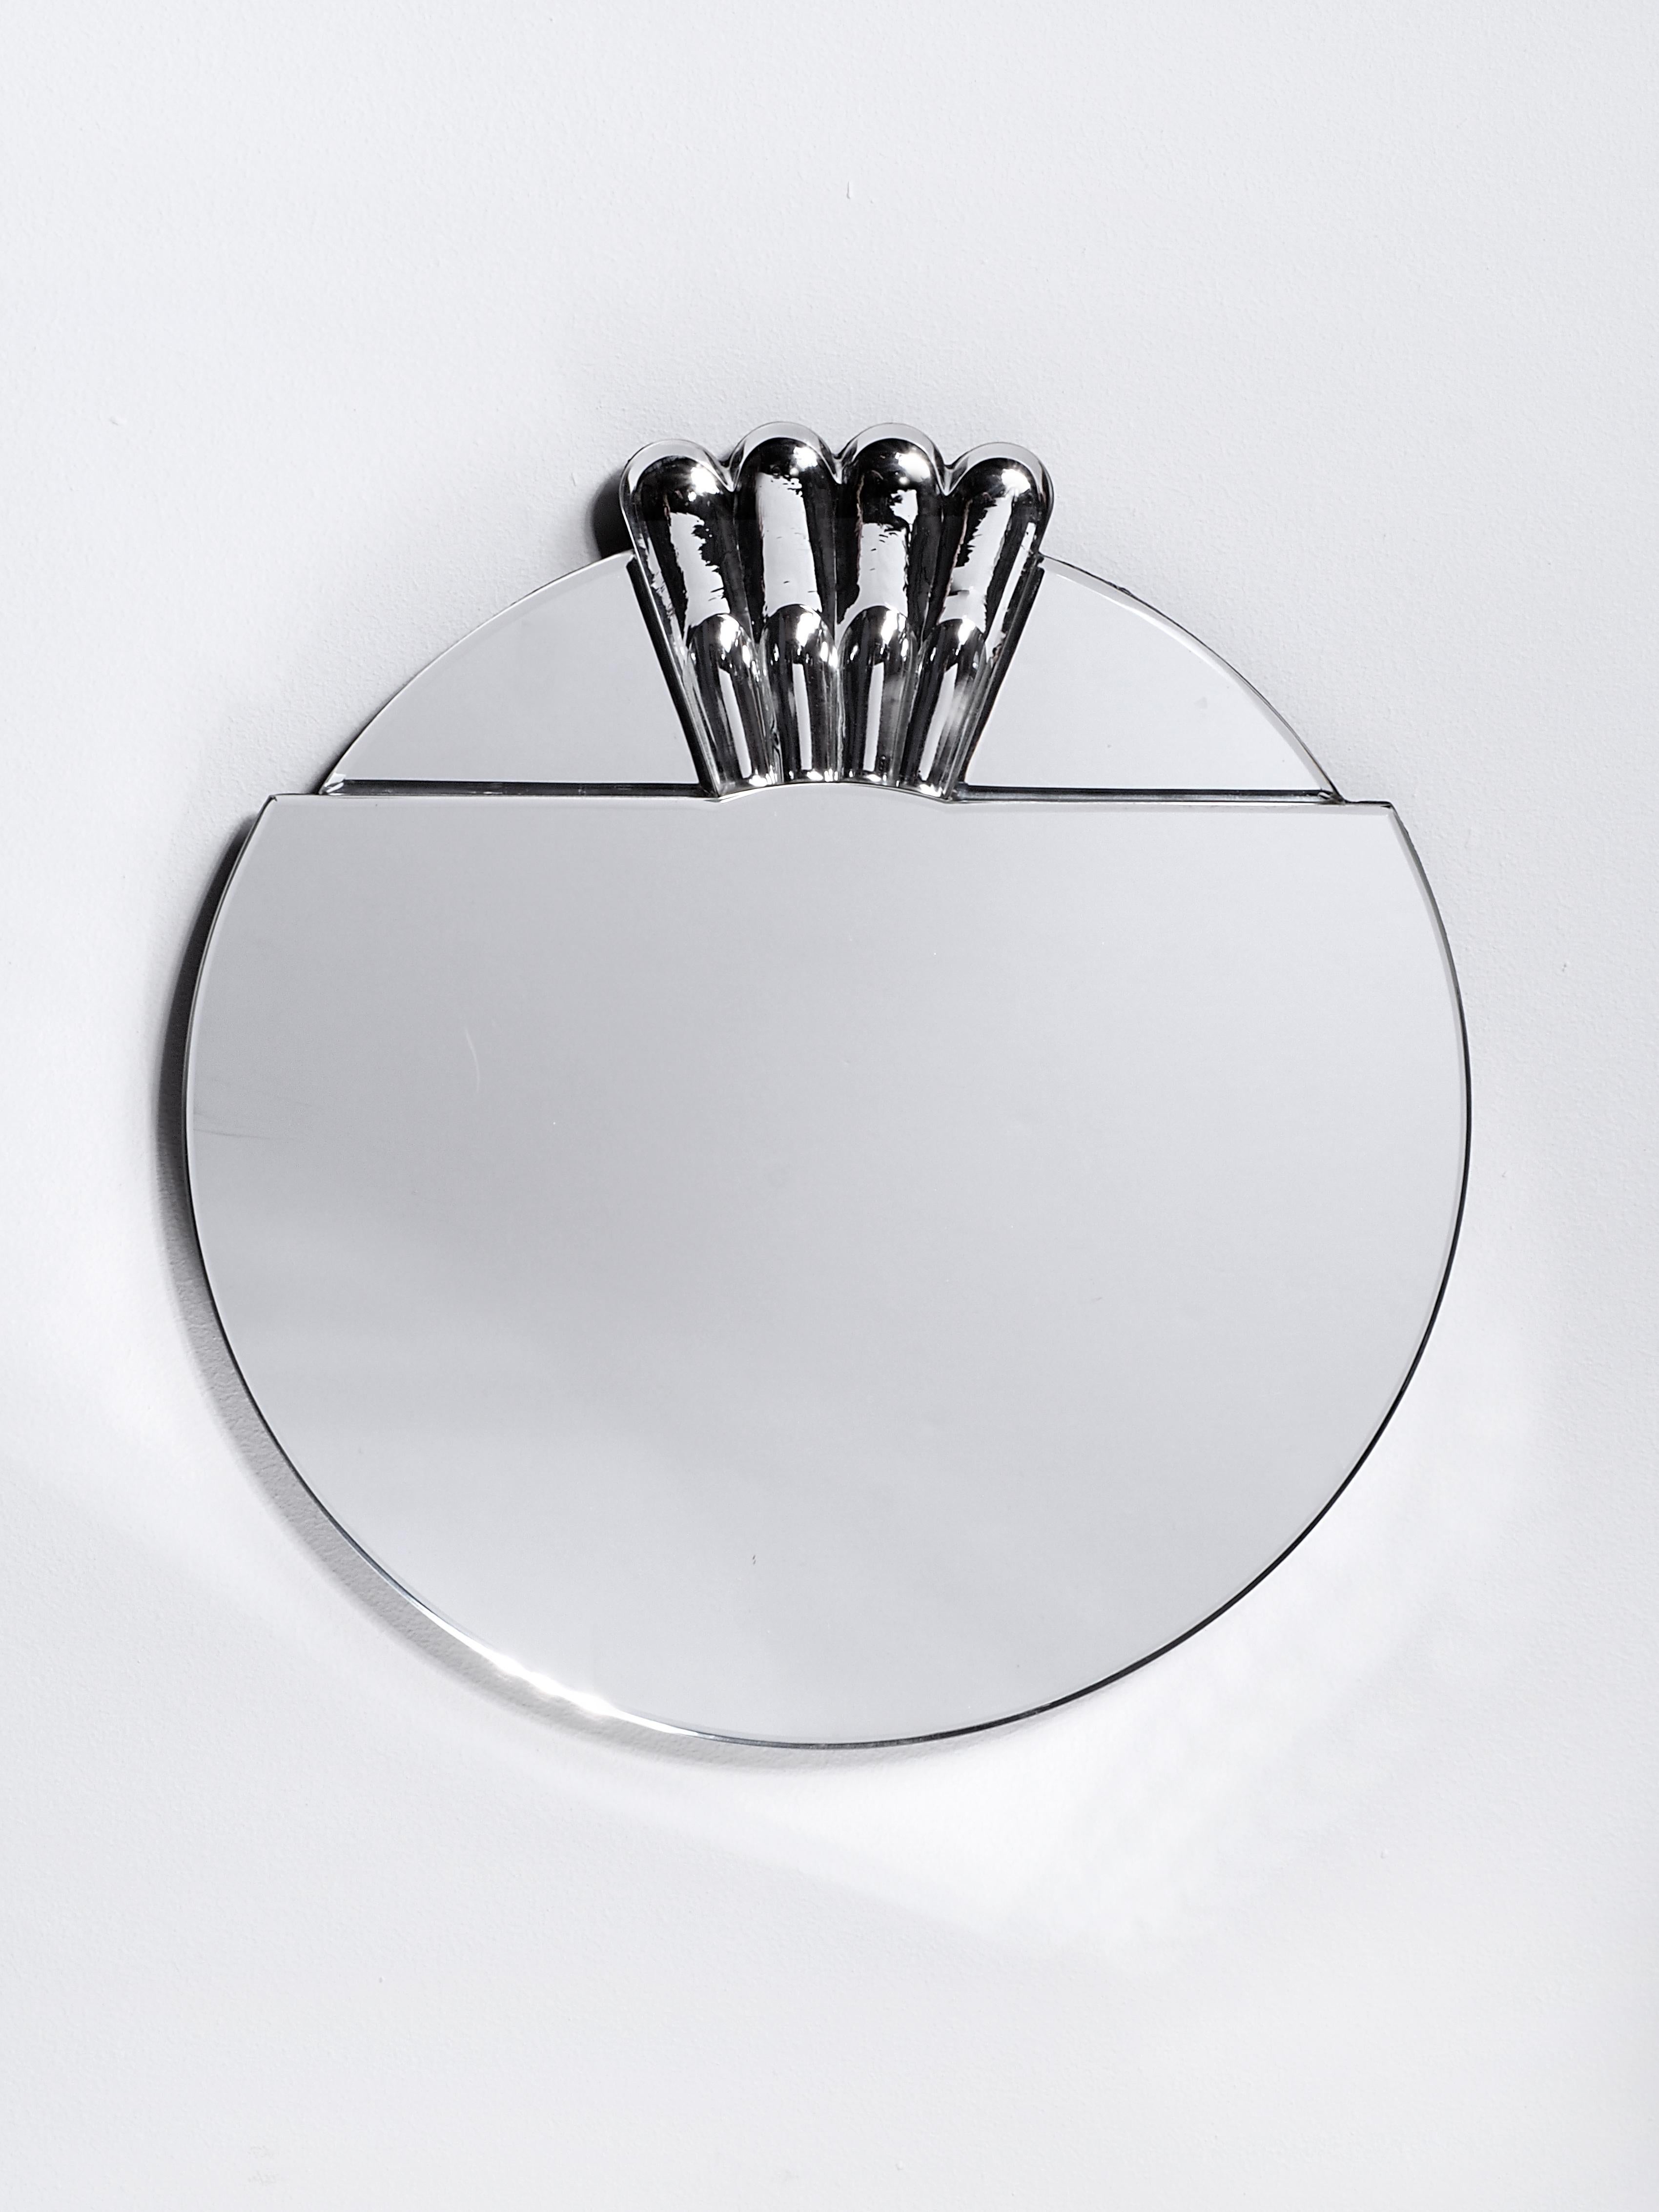 Scena elemento tre miroir de Murano par Nikolai Kotlarczyk
Dimensions : D 3 x L 30 x H 30 cm 
MATERIAL : Verre sculpté argenté, dos en bois gris foncé.
Également disponible dans d'autres tailles et dimensions. 


Elemento est une série de miroirs en